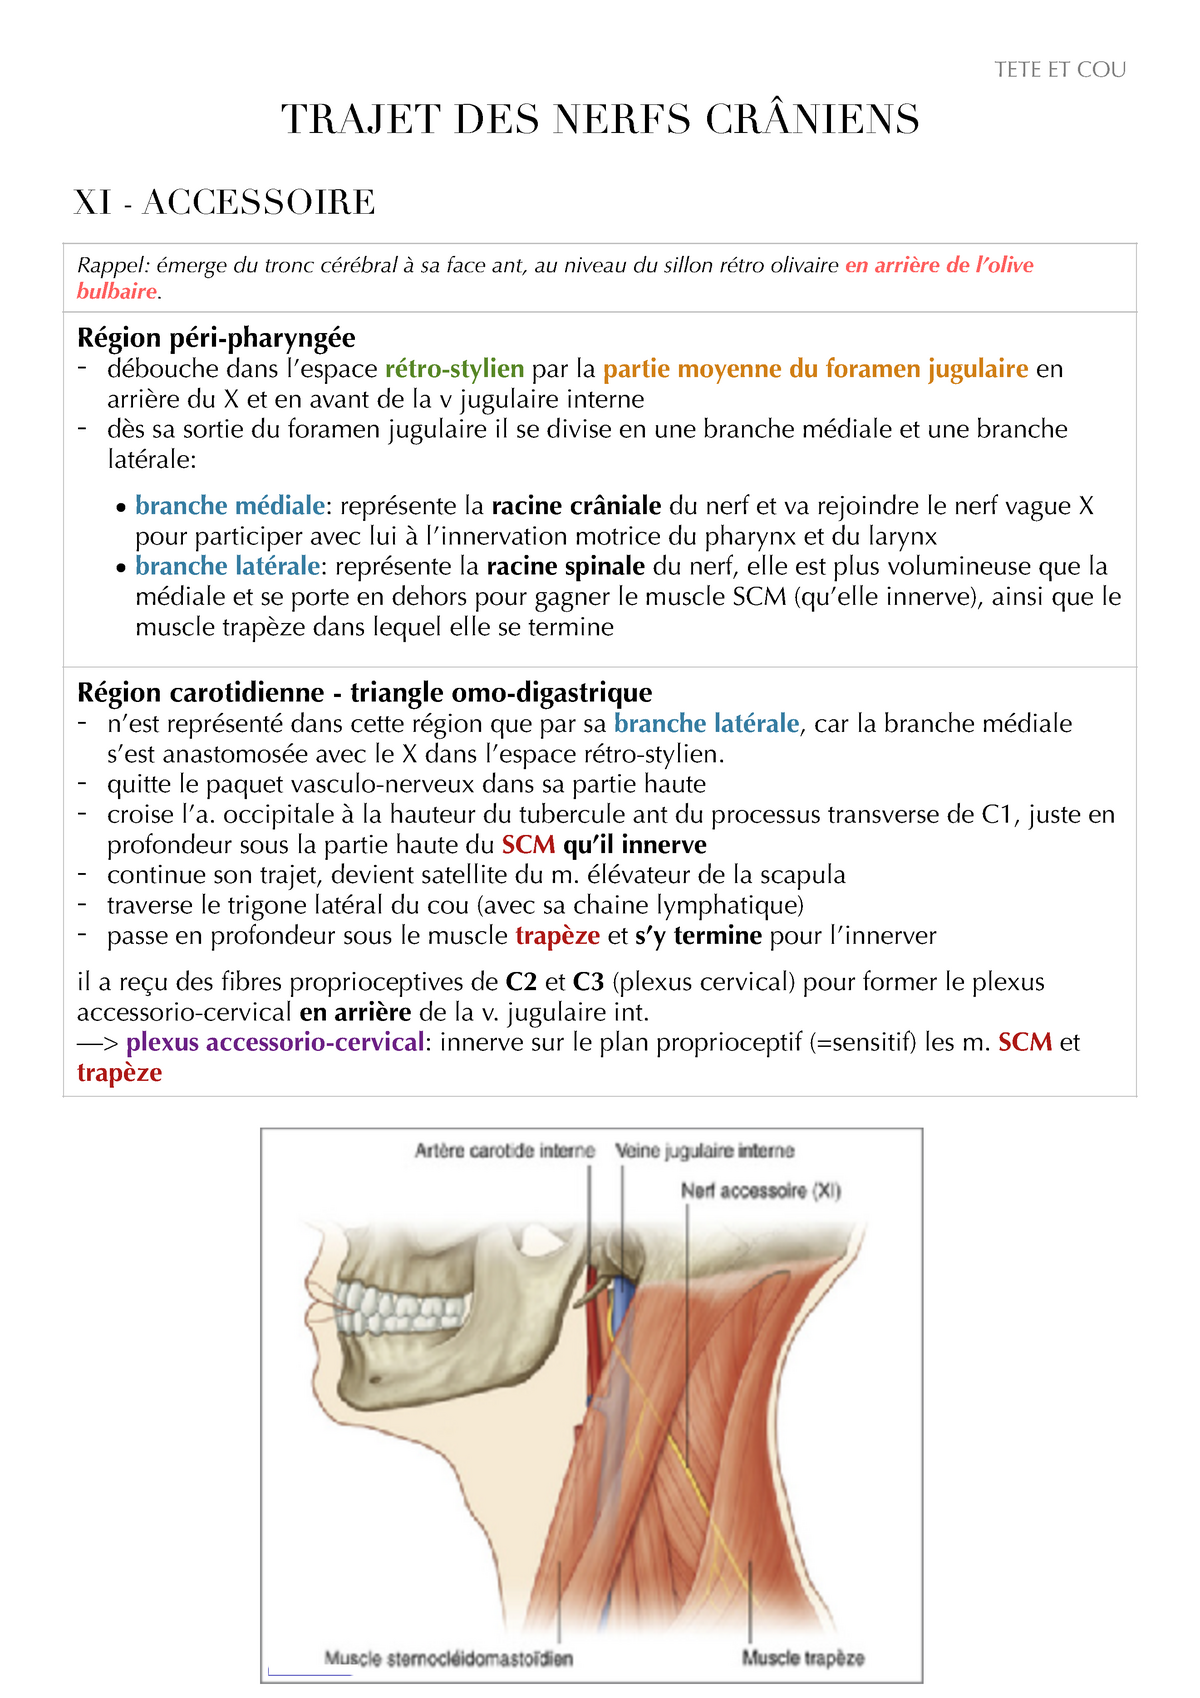 UE8MT - Fiche nerfs crâniens - XI Accessoire - TETE ET COU TRAJET